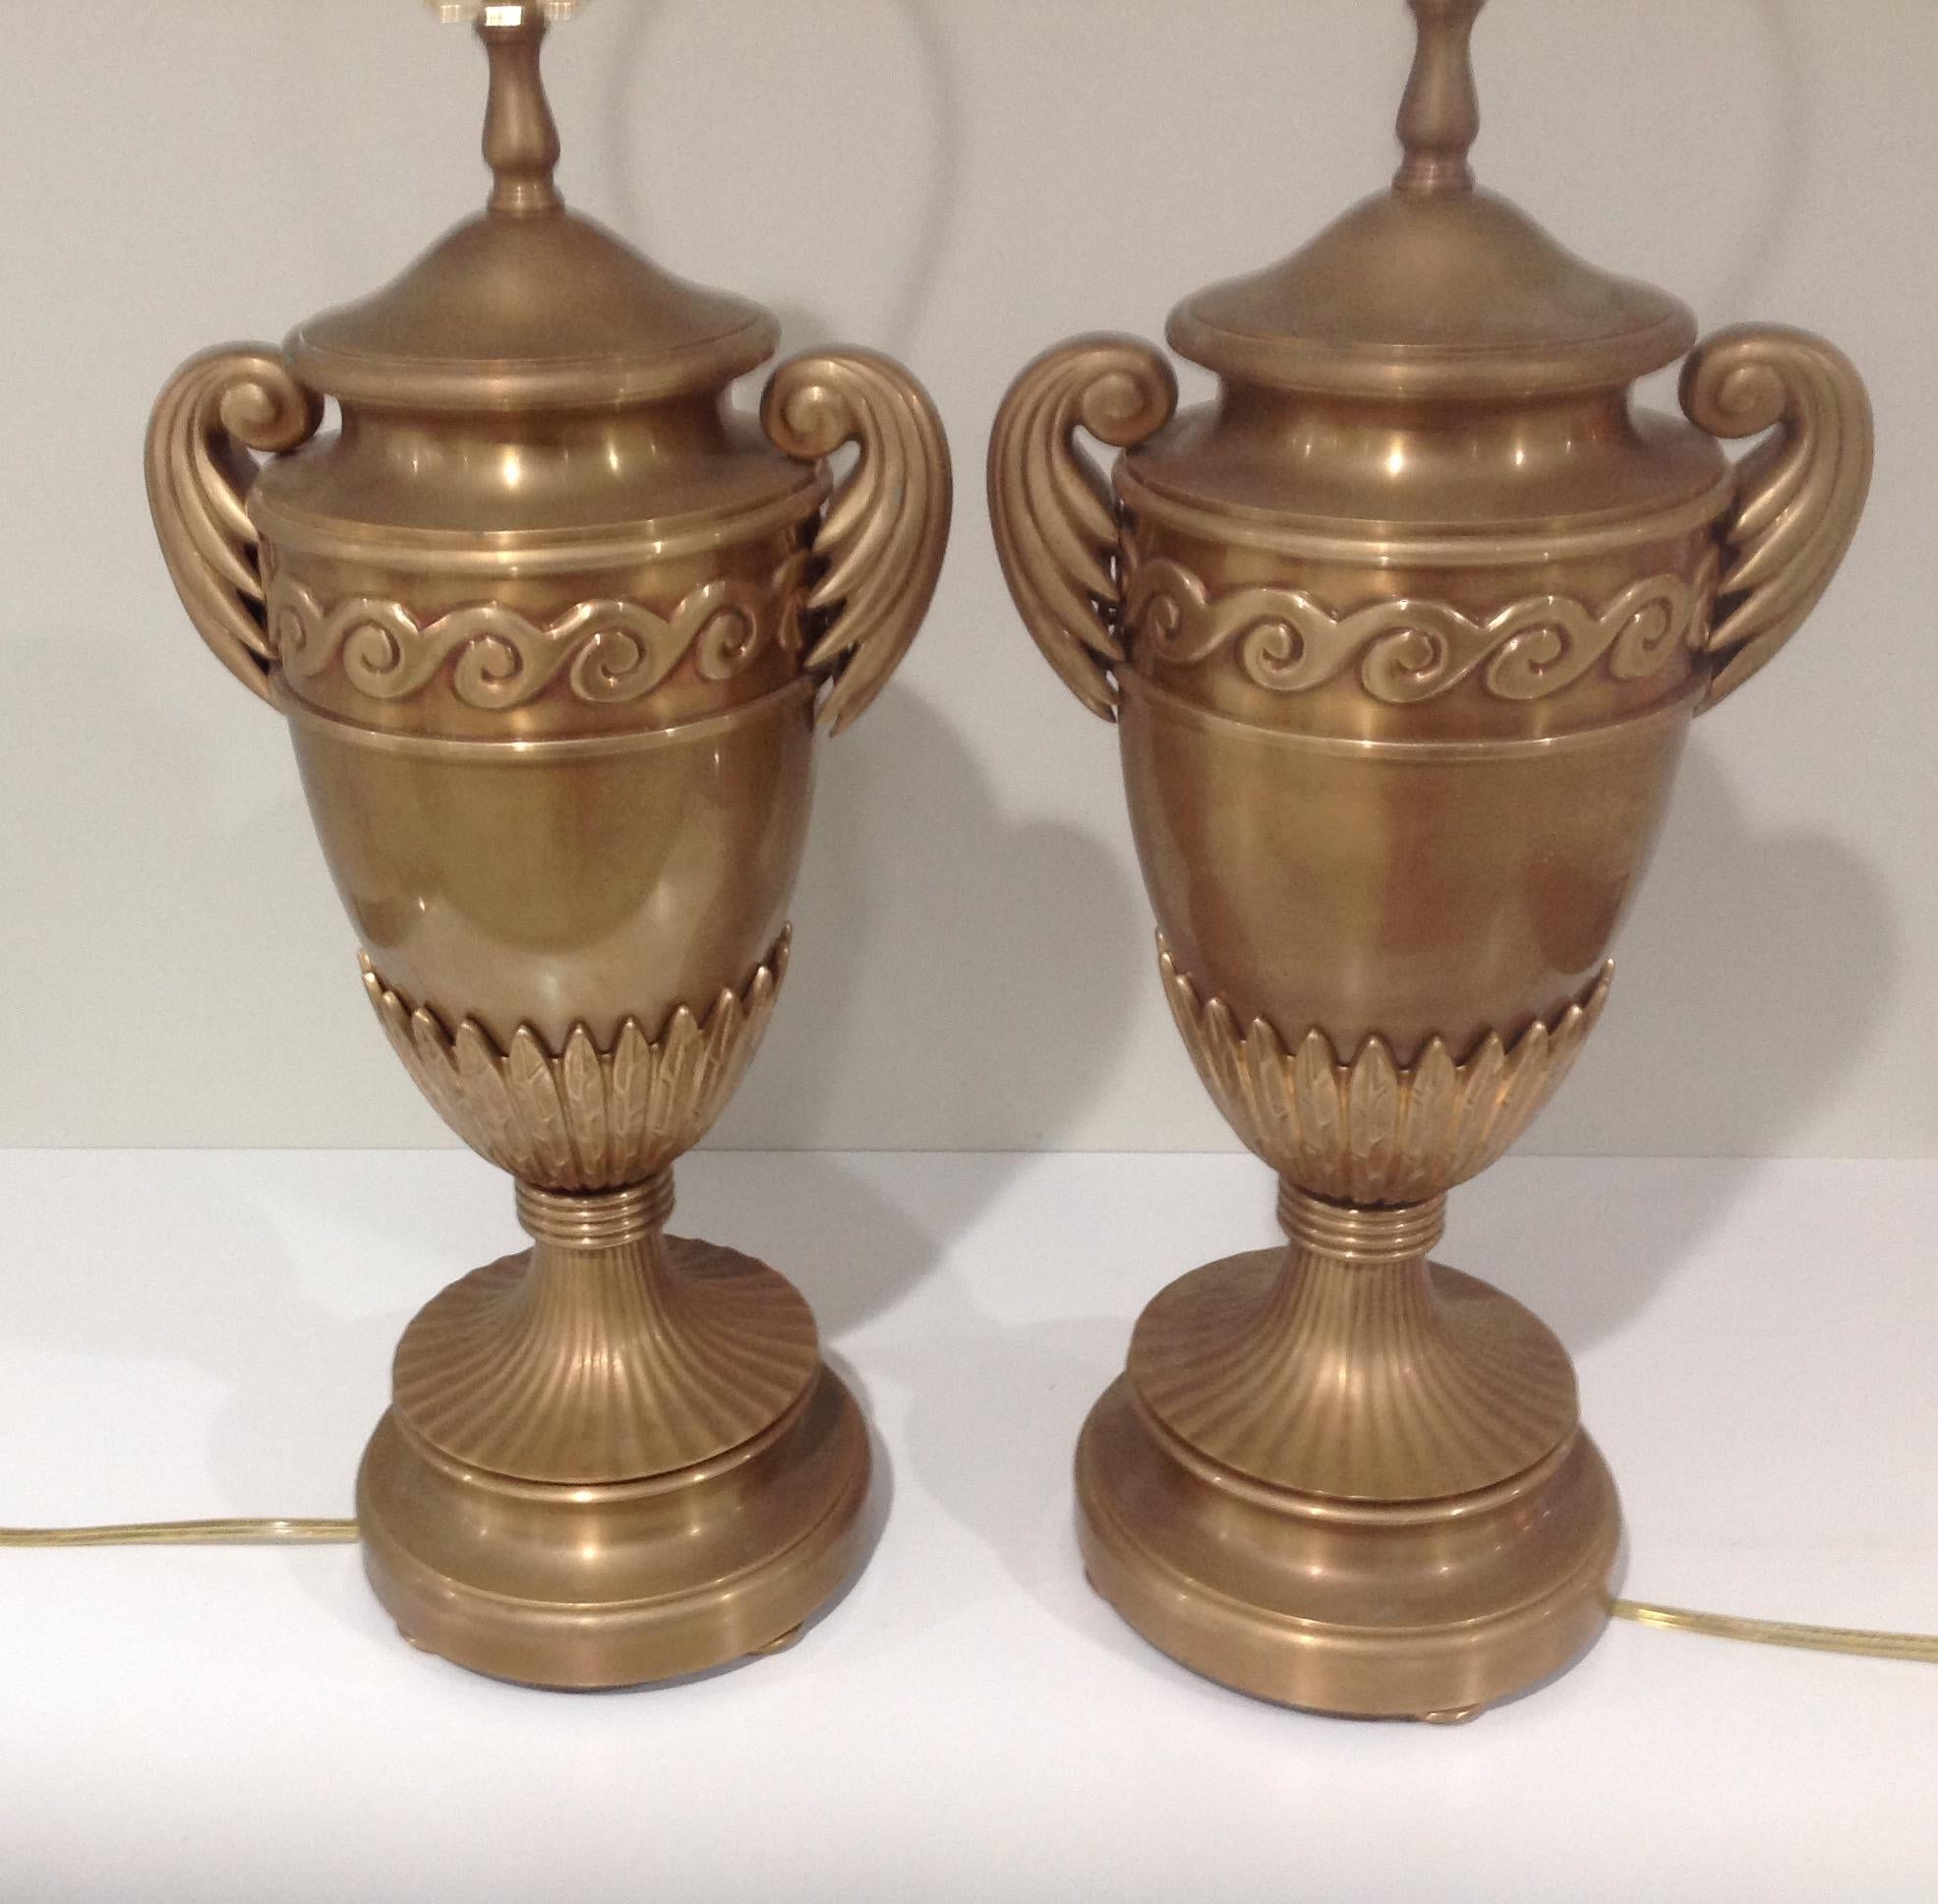 Großes und sehr dekoratives Lampenpaar in Form einer Chapman-Urne. Die Lampen sind entweder aus Messing oder Bronze. Die Lampen haben noch die ursprünglichen Harfen und Endstücke. CIRCA 1980er Jahre. 

Chapman Manufacturing Company, Inc. ist ein